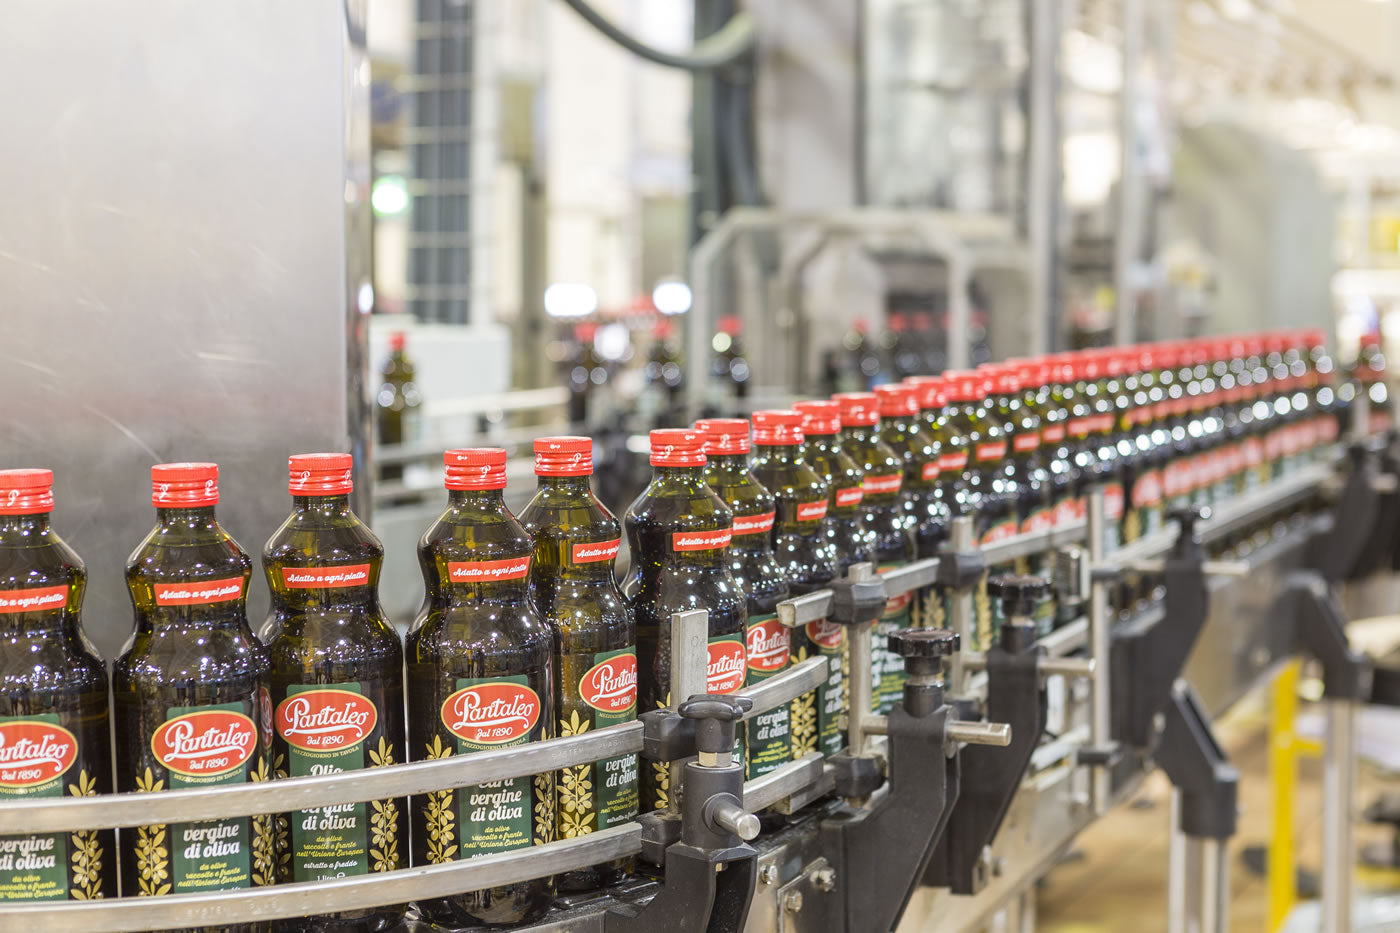 Olio Pantaleo pronto alla conquista del mercato nazionale dell'extra vergine di oliva, puntando sulla qualità al giusto prezzo